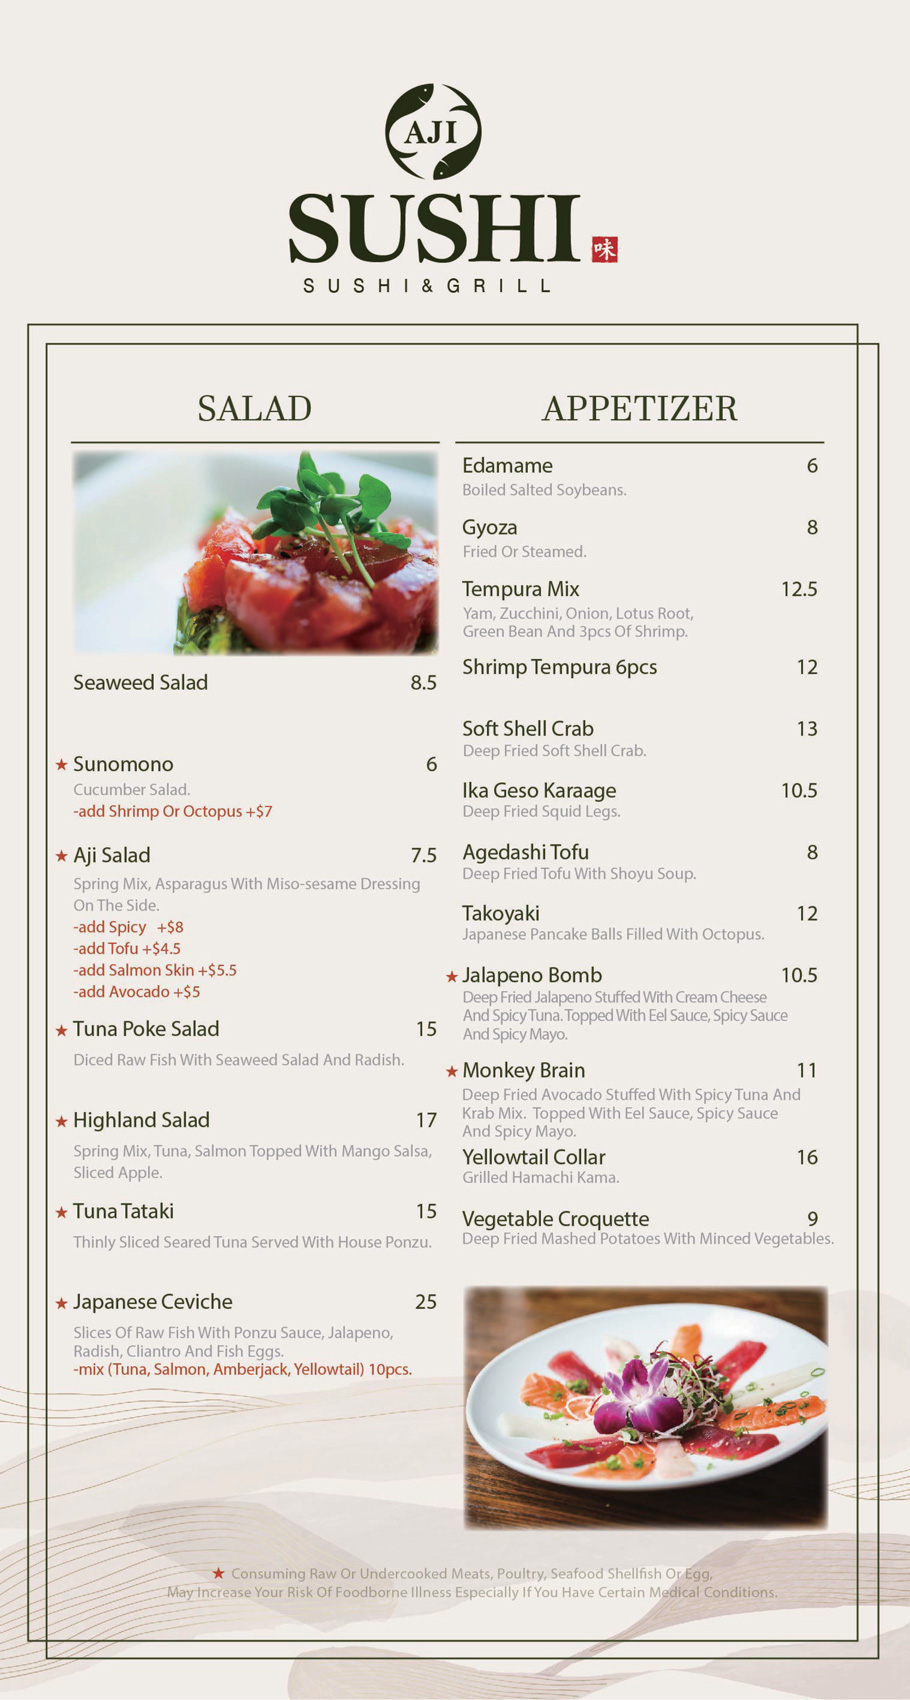 aji-sushi-newcastle-menu_0120_02